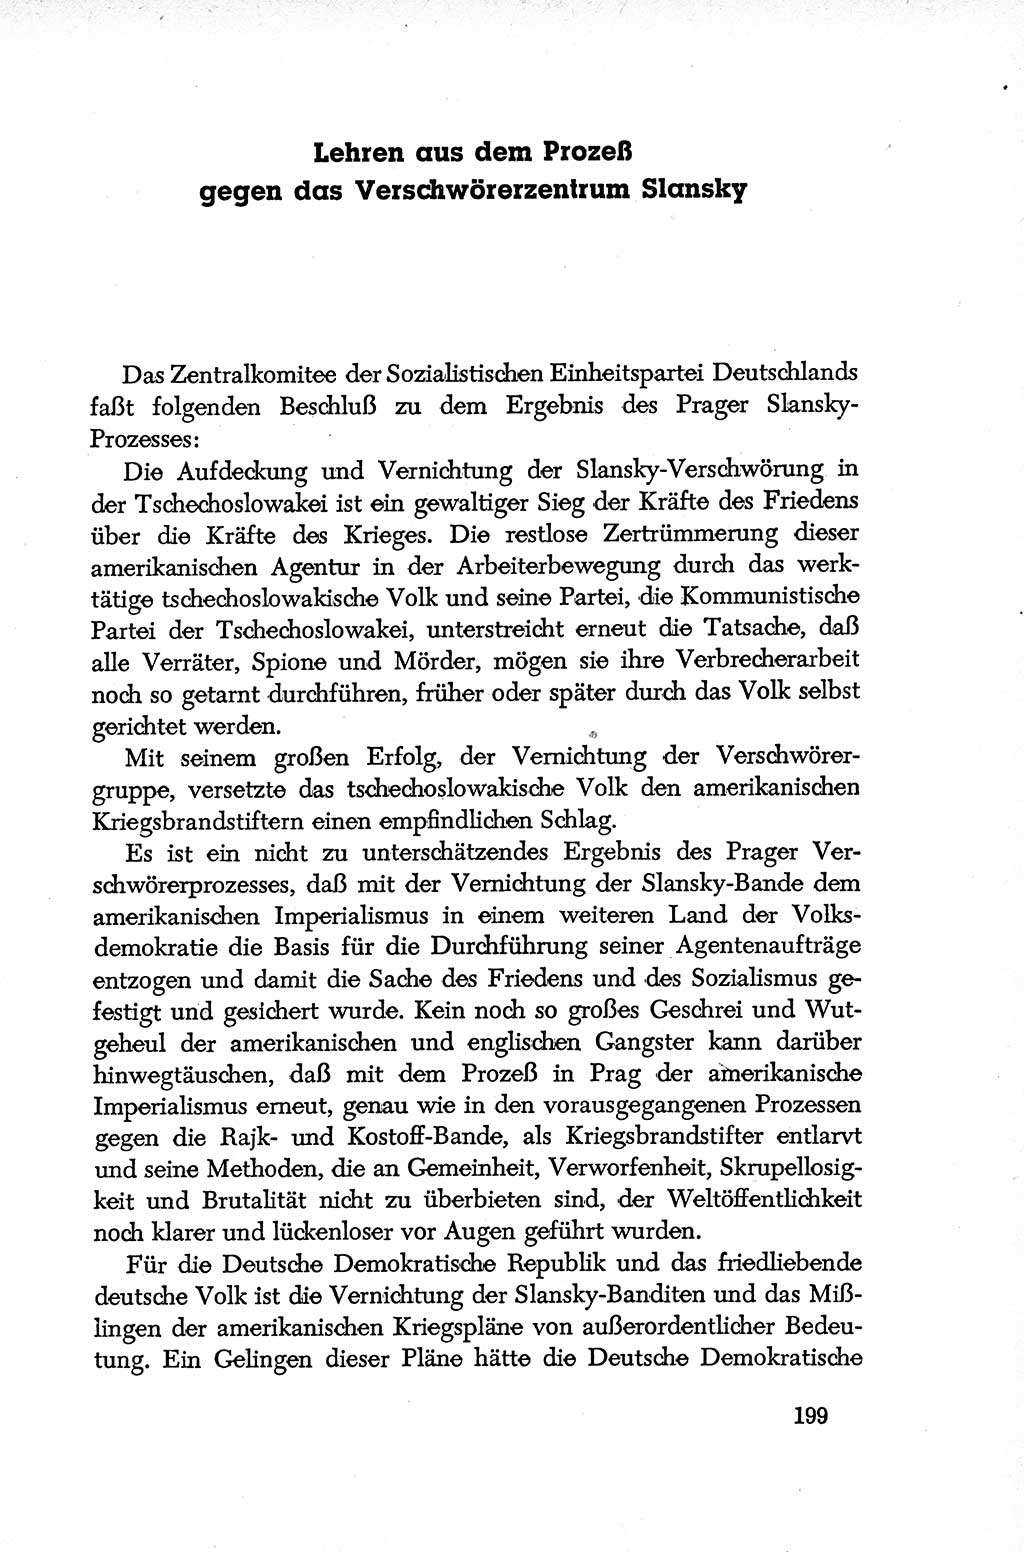 Dokumente der Sozialistischen Einheitspartei Deutschlands (SED) [Deutsche Demokratische Republik (DDR)] 1952-1953, Seite 199 (Dok. SED DDR 1952-1953, S. 199)